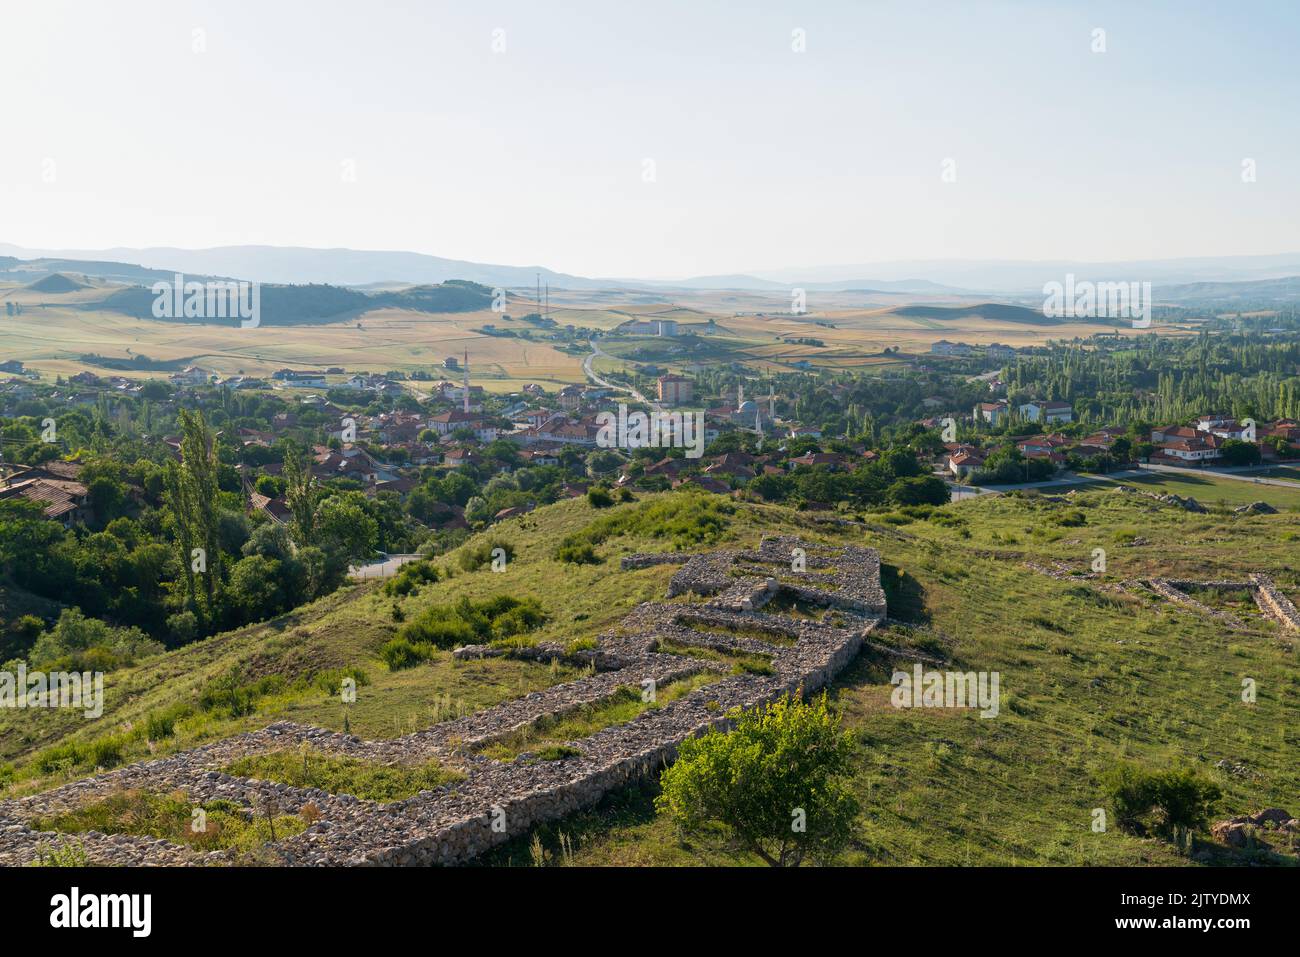 Vista generale di Hattusa era la capitale dell'Impero ittita con alcune strutture in pietra e moderna città Bogazkale sullo sfondo. Corum, Turchia. Foto Stock